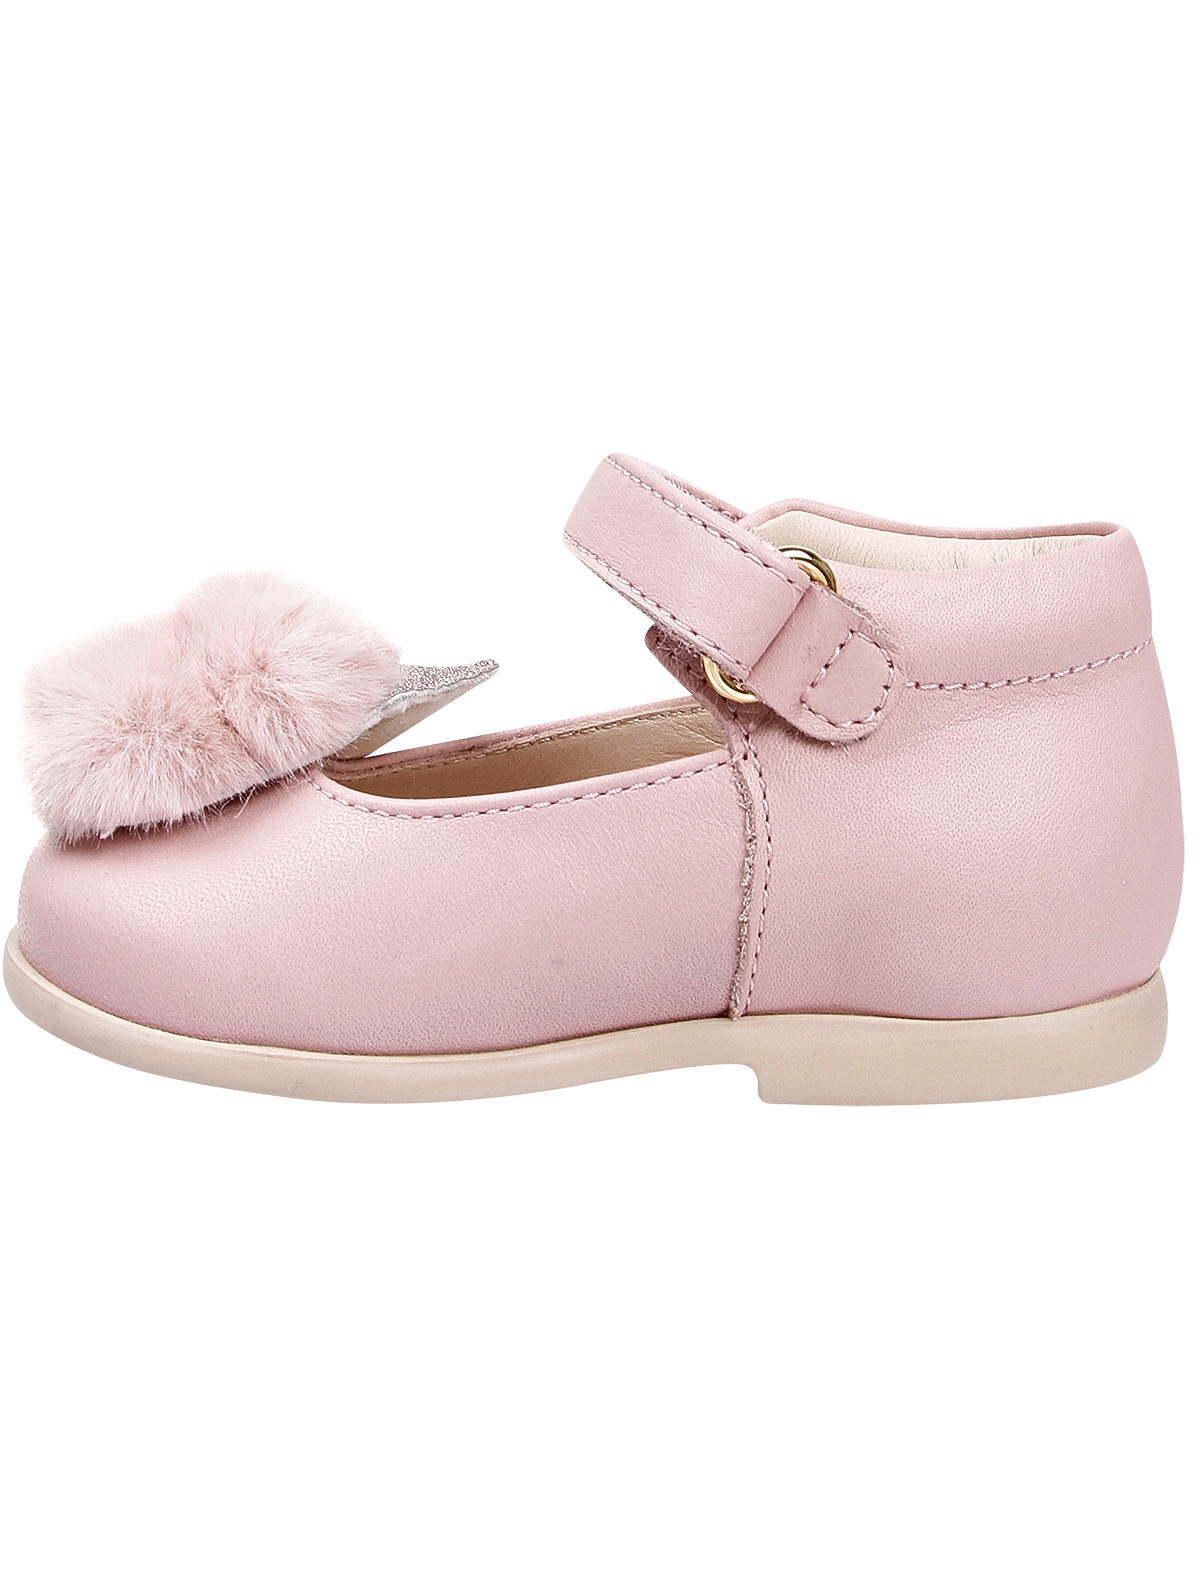 Туфли Florens 2041756, цвет розовый, размер 24 2012609980018 - фото 3